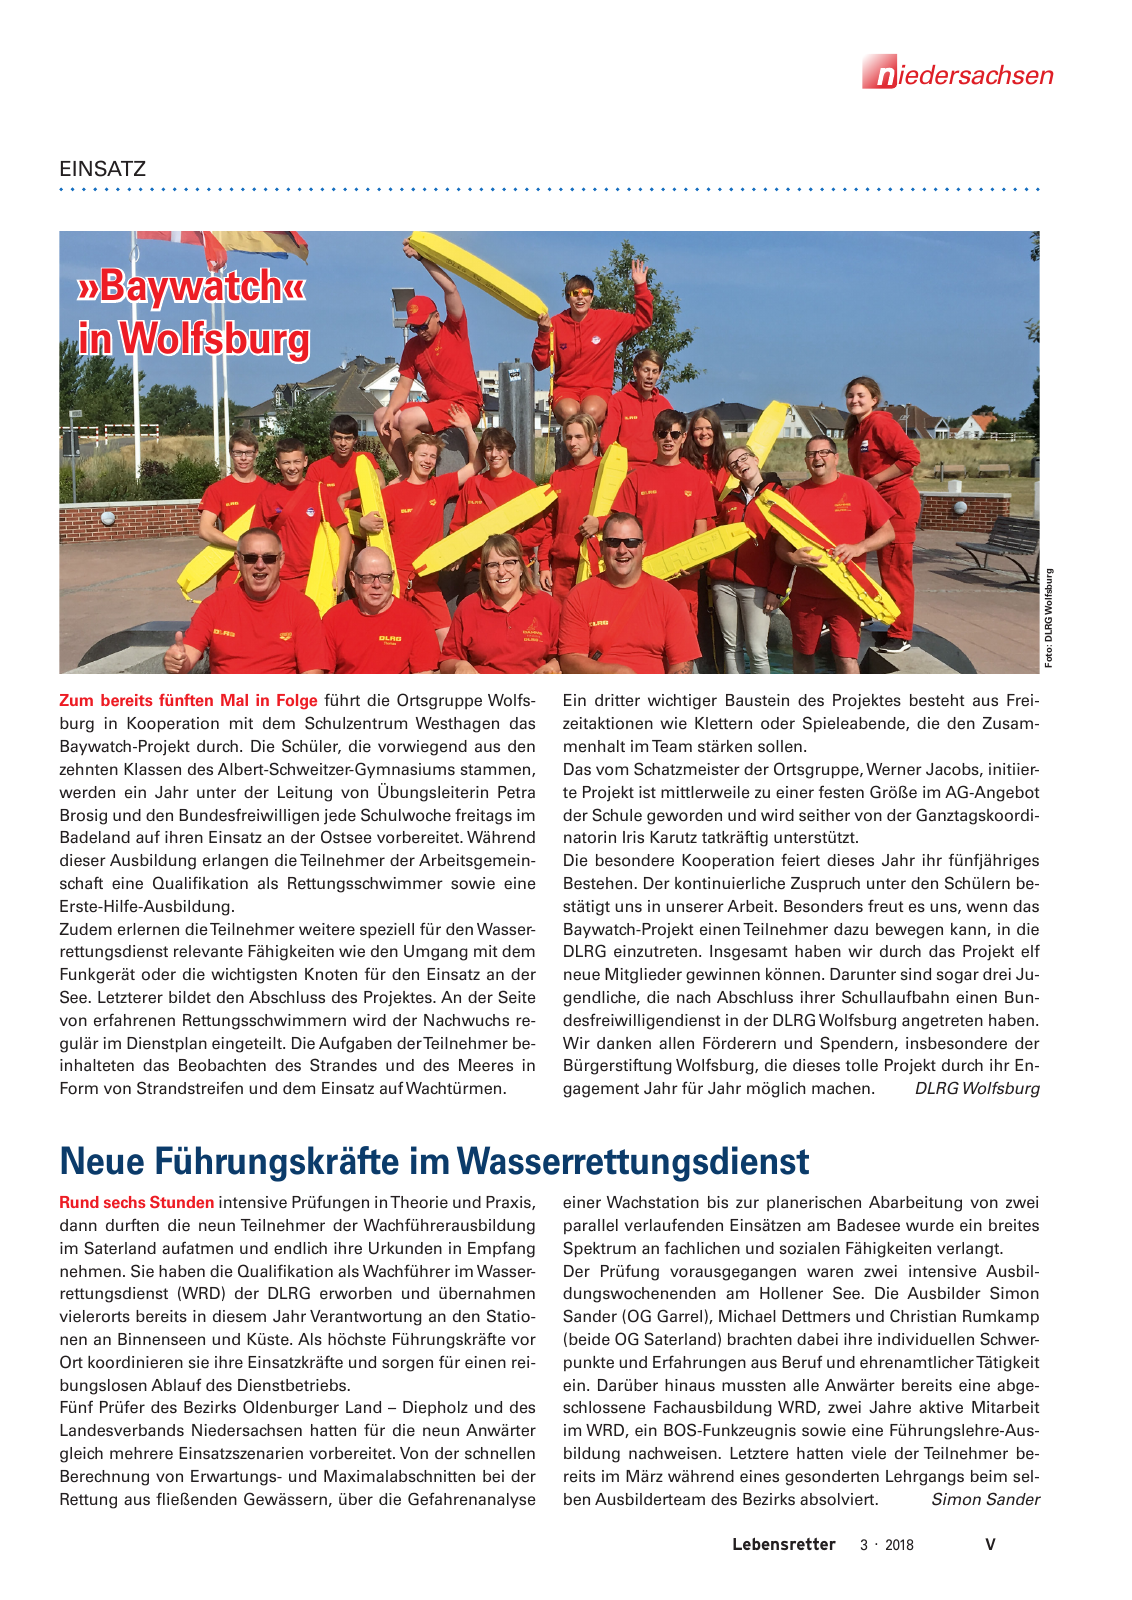 Vorschau Lebensretter 3/2018 - Regionalausgabe Niedersachsen Seite 7